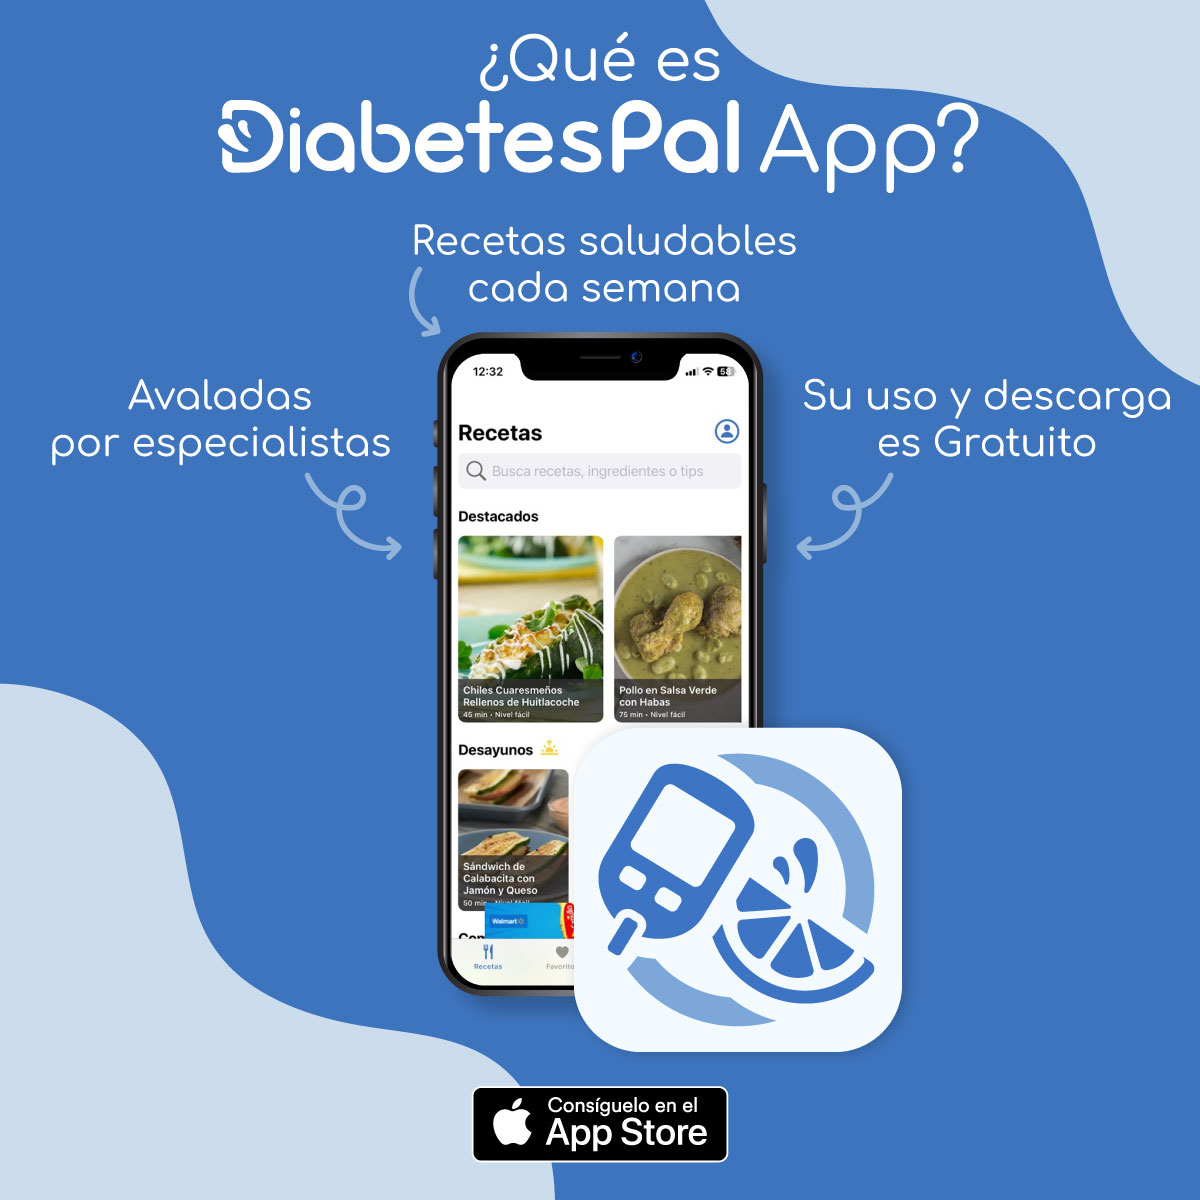 En México hay más de 13 millones de personas con diabetes. Para ellas y sus cuidadores creamos #DiabetesPal. Puedes descargarla GRATIS para tu iPhone o iPad aquí ➡️bit.ly/4d0xat1